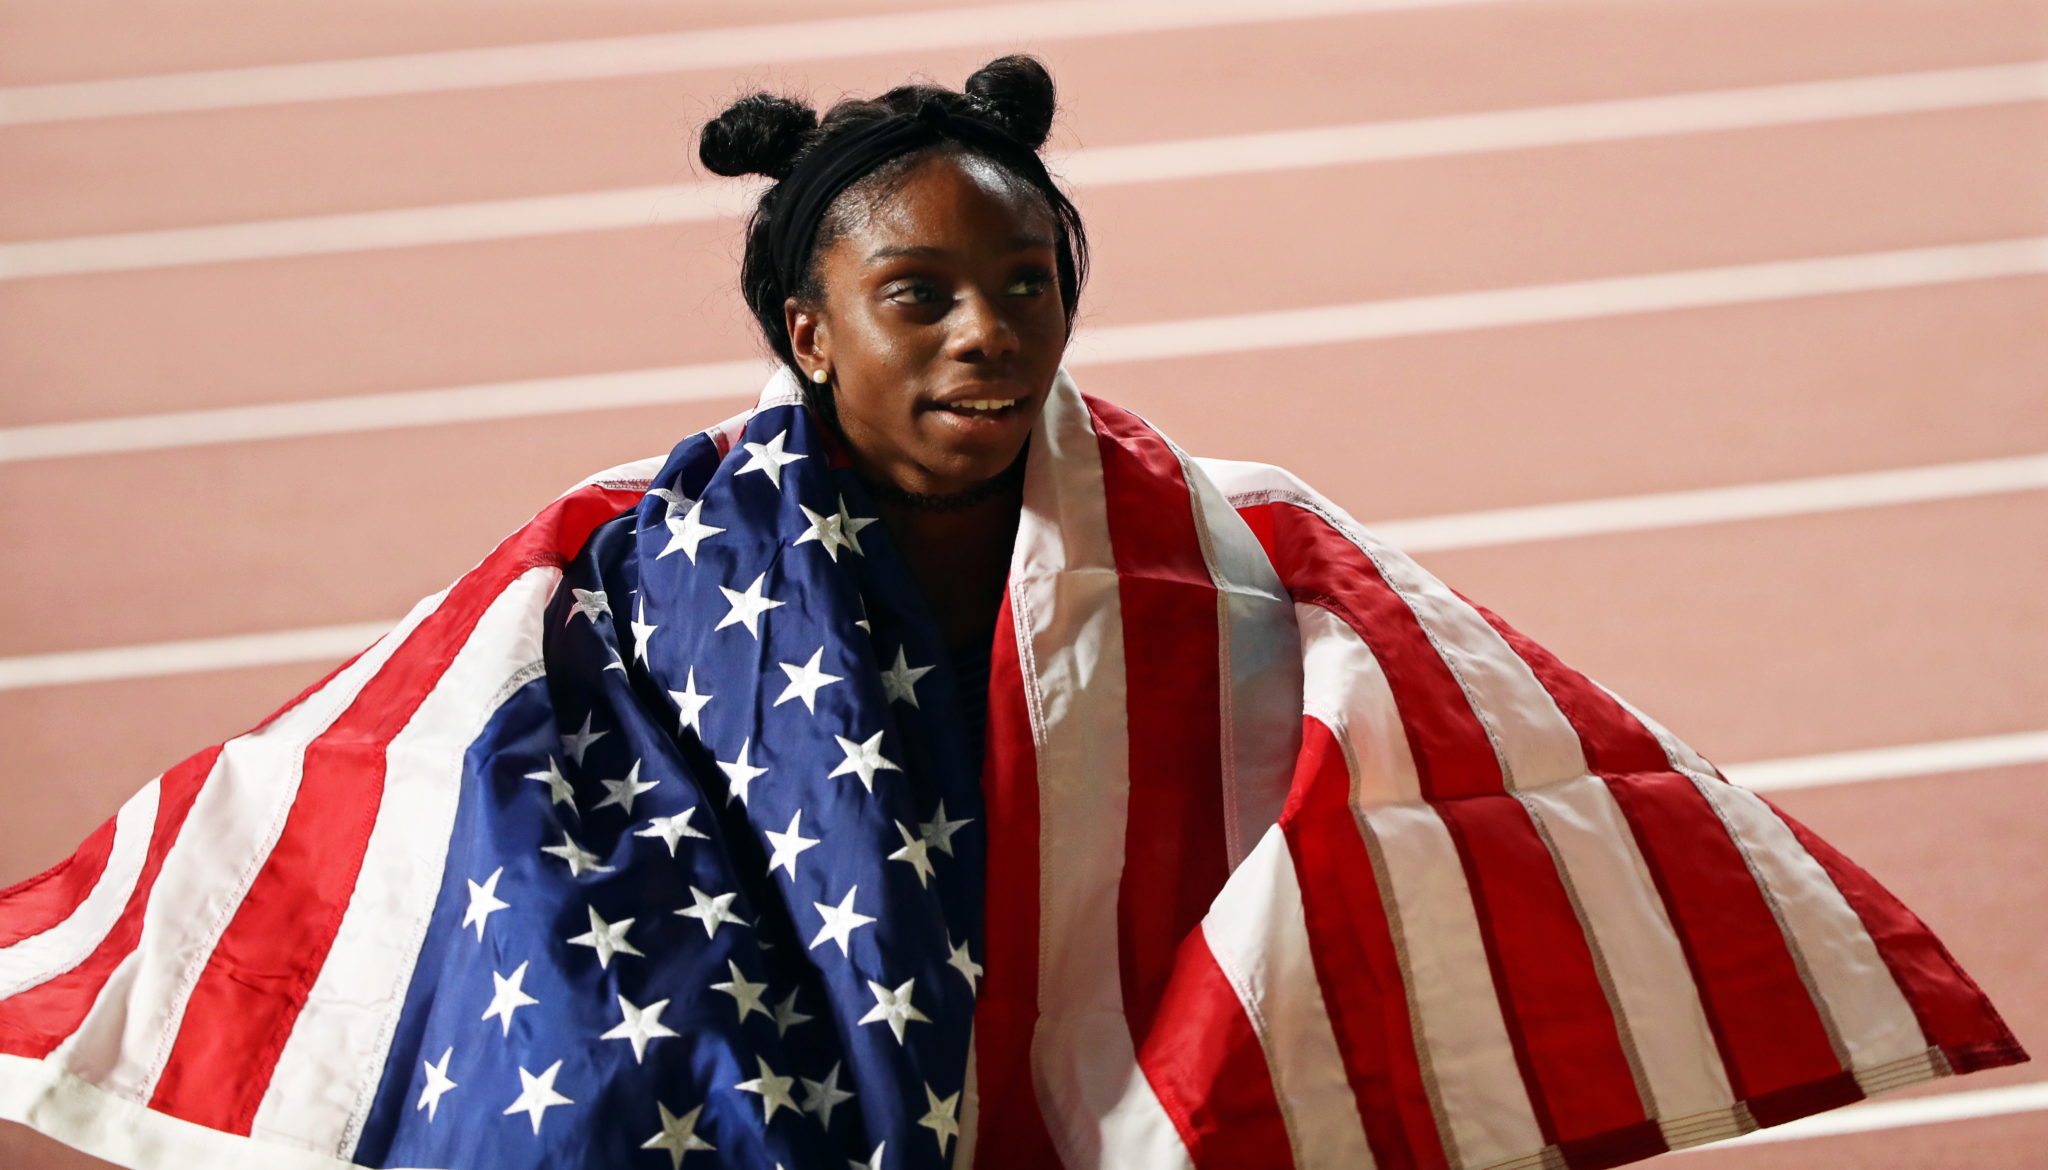 Brittany Brown ze Stanów Zjednoczonych zajęła II miejsce na Mistrzostwach LekkoAtletycznych w Doha w Katarze w biegu na 200 metrów kobiet, fot. YAHYA ARHAB,mPAP/EPA.